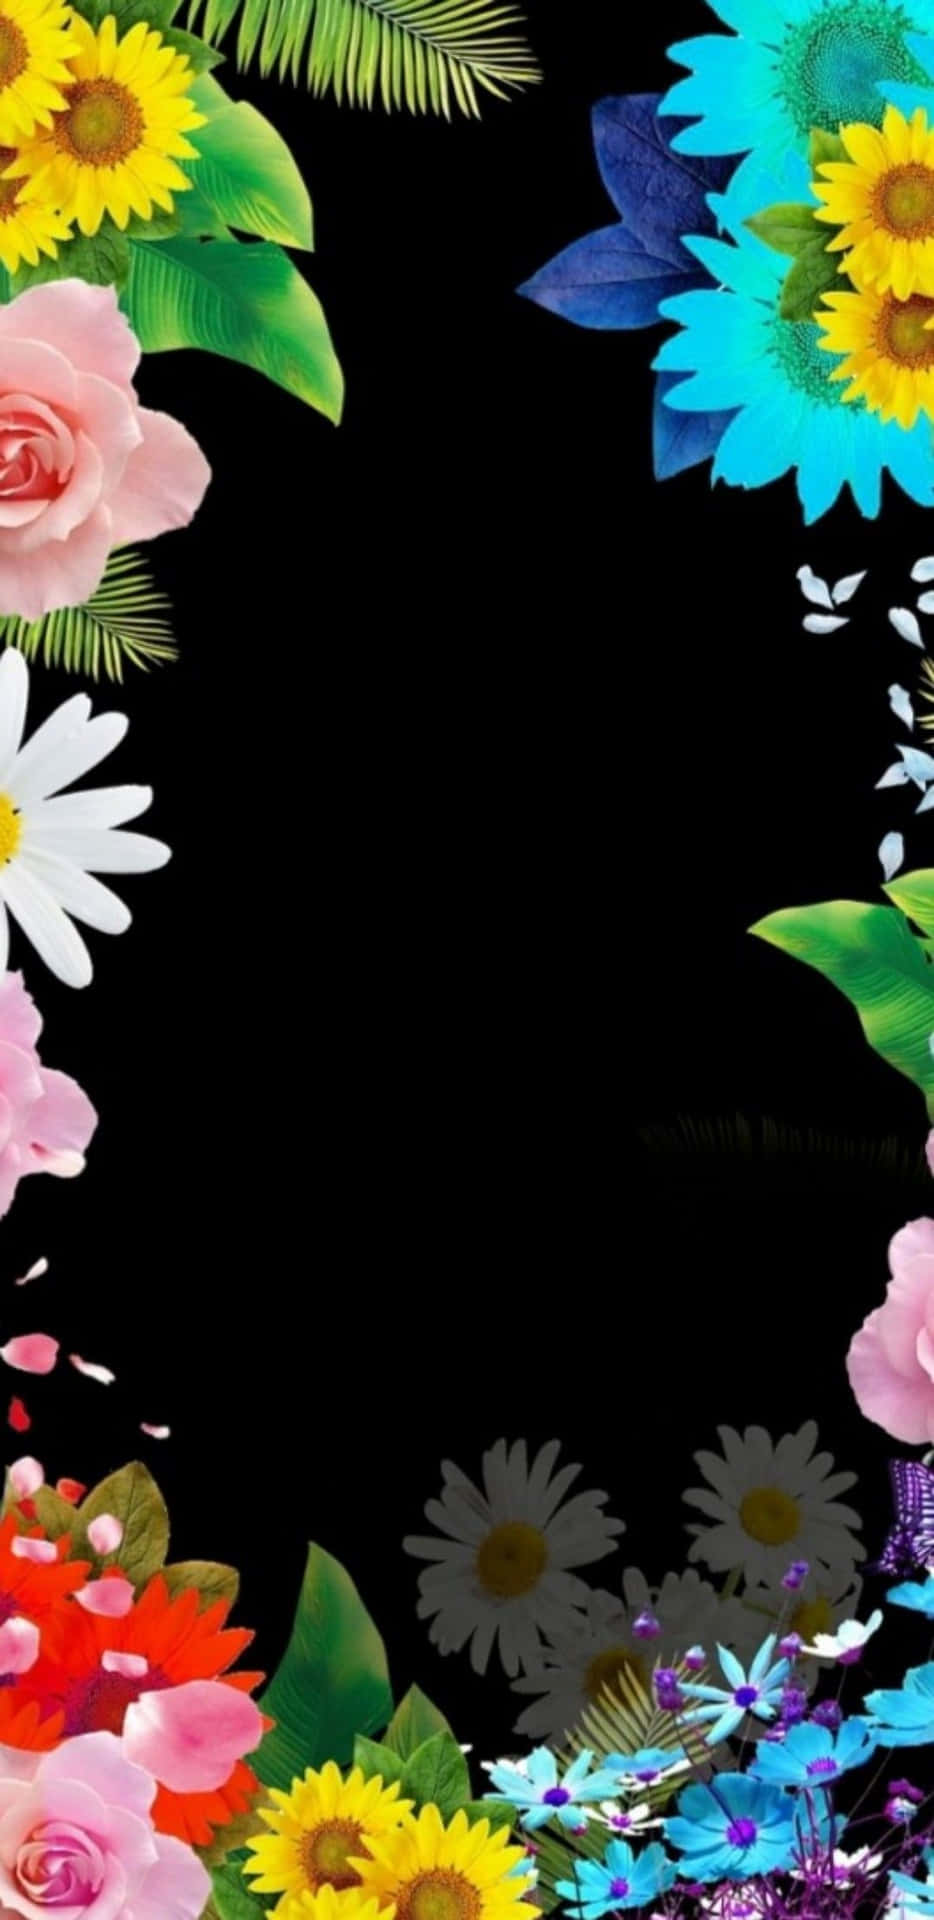 Einewand Aus Bunten Blumen Erstreckt Sich Hinter Einem Iphone. Wallpaper